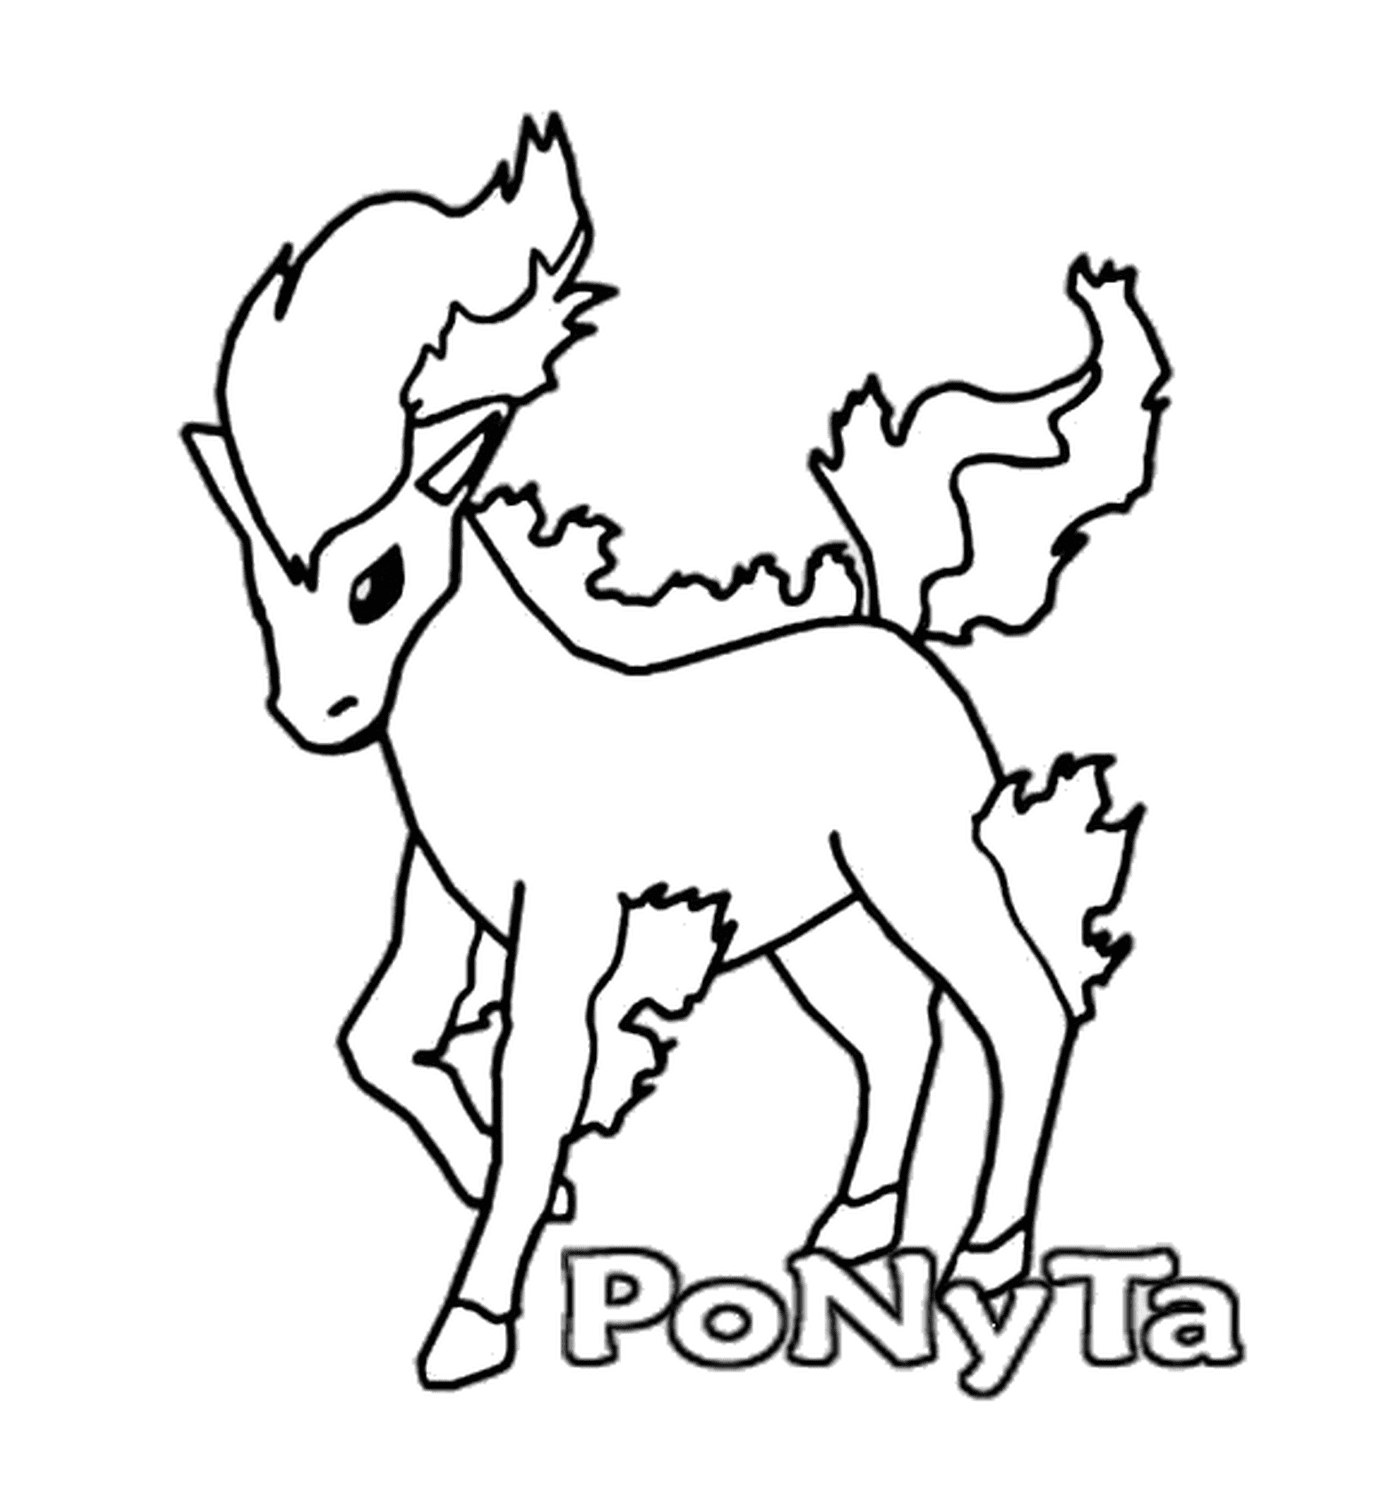  Ponyta : Elegant fire horse 